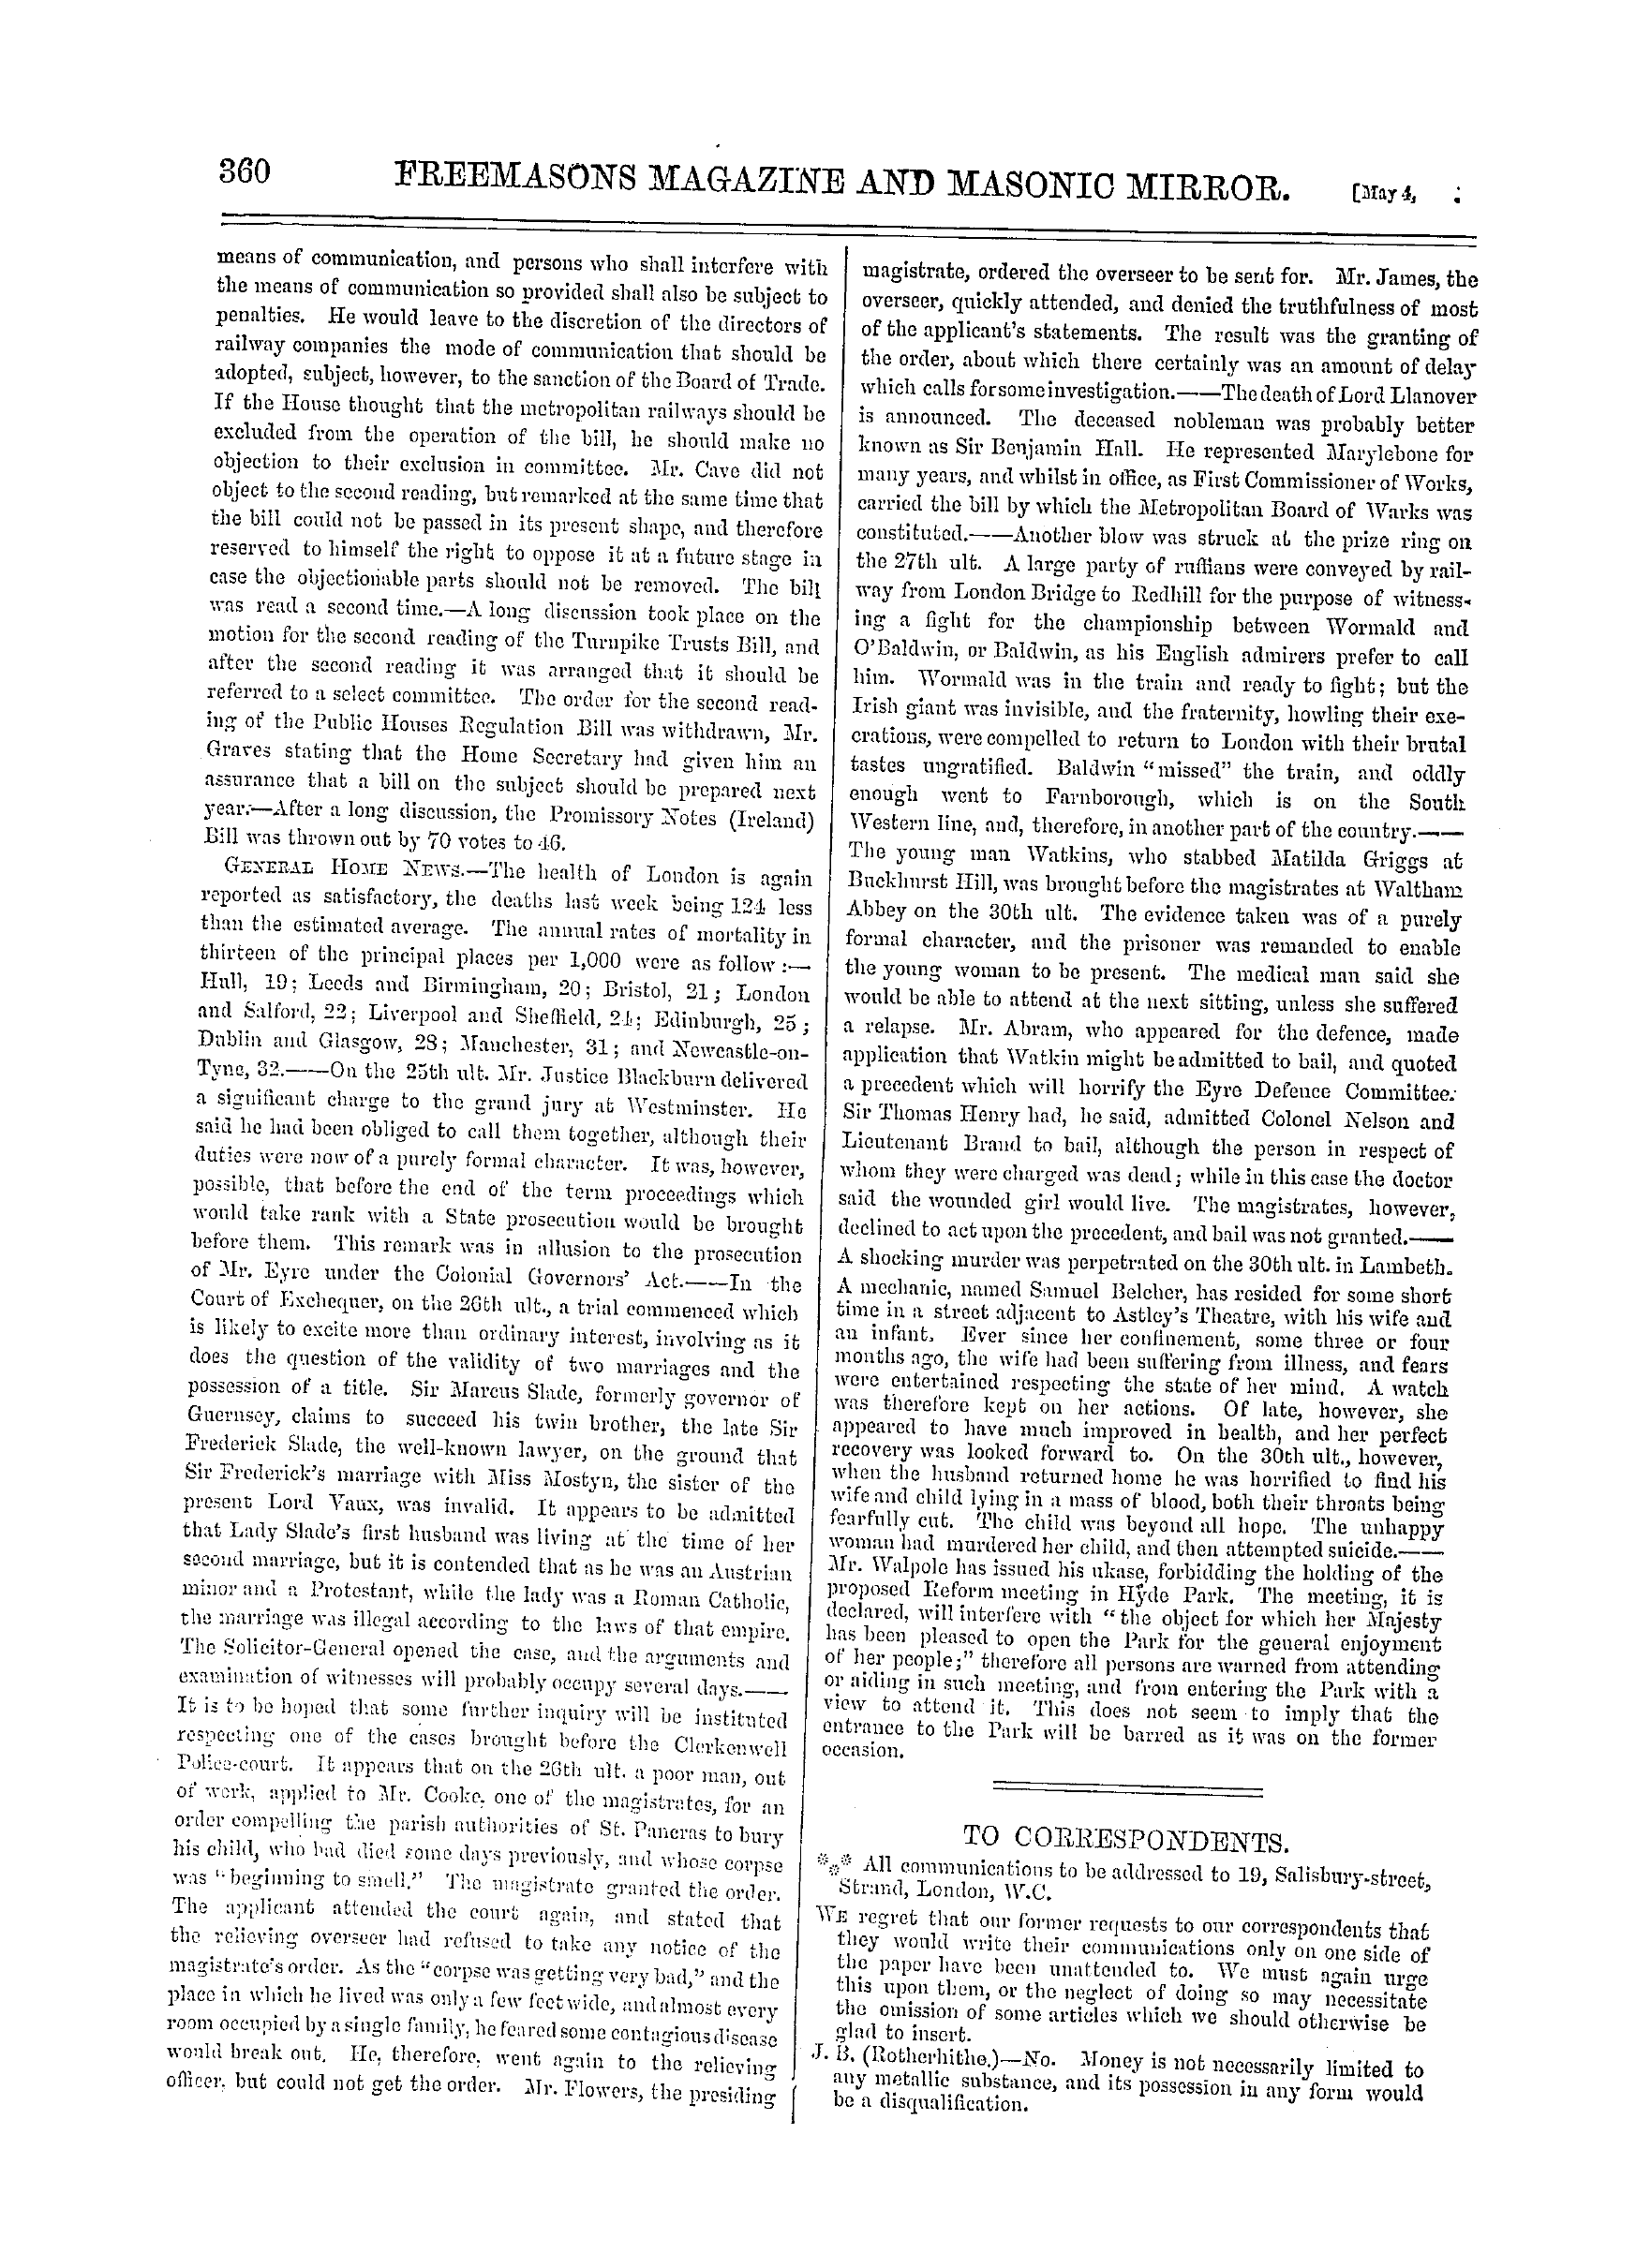 The Freemasons' Monthly Magazine: 1867-05-04 - To Correspondents .